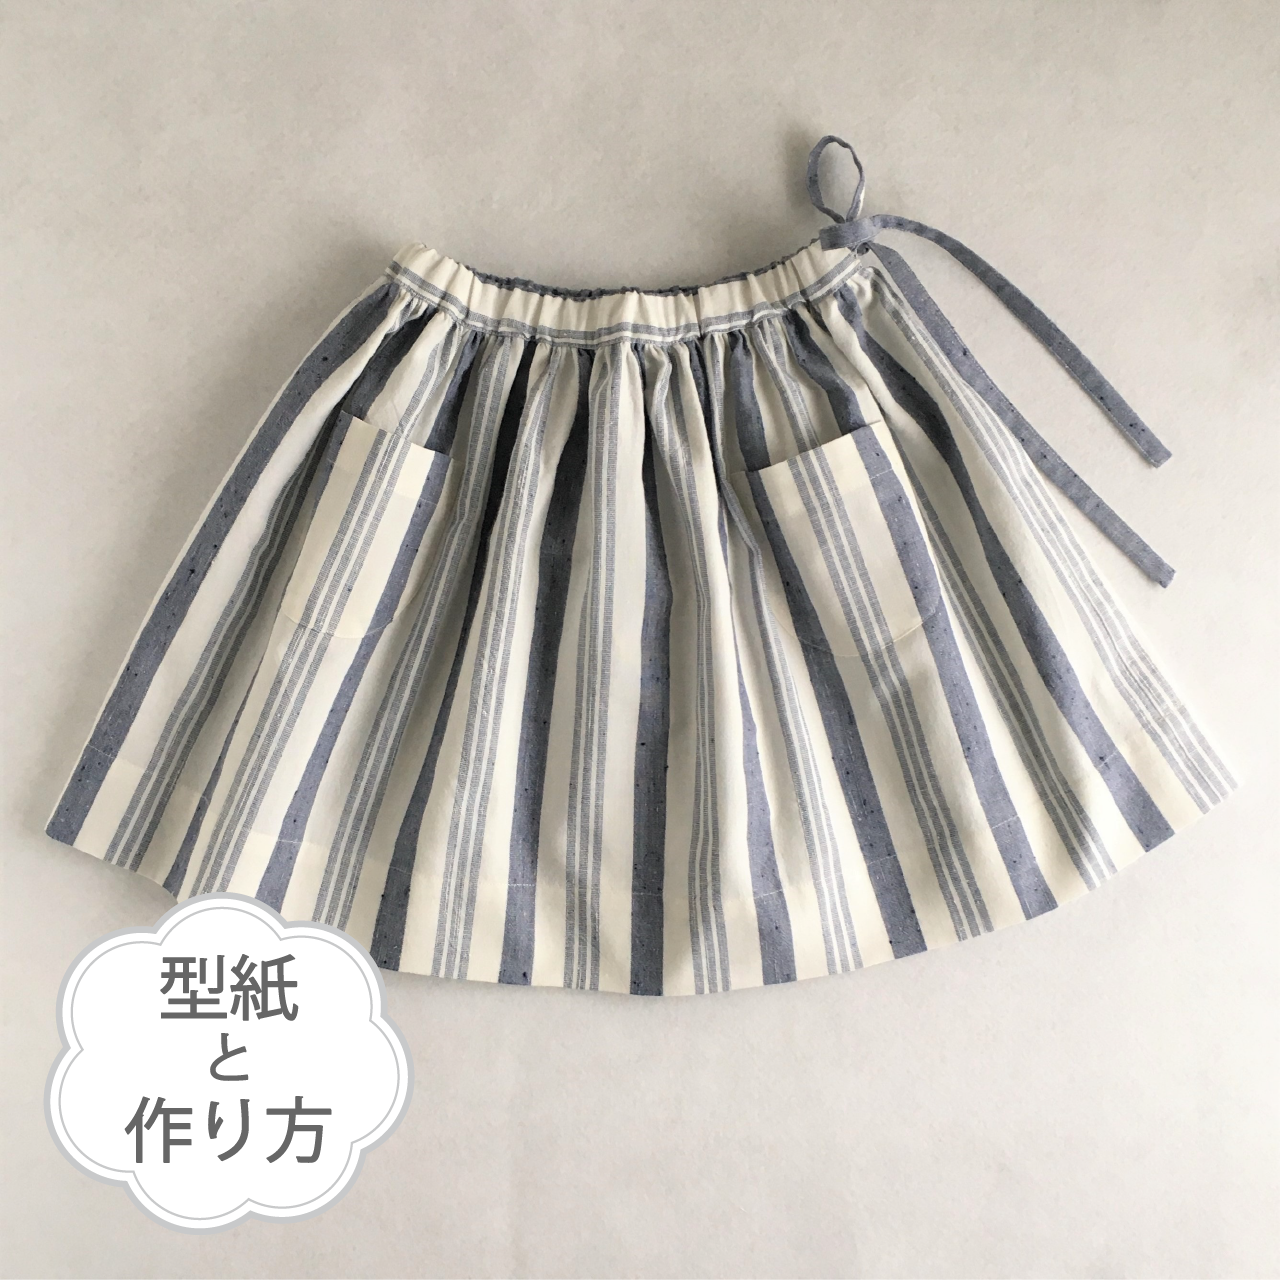 ギャザースカート 70 130サイズ 型紙 作り方のセット To Bo 1905 Ki Bo 1905 子供 服の型紙ショップ Tsukuro ツクロ